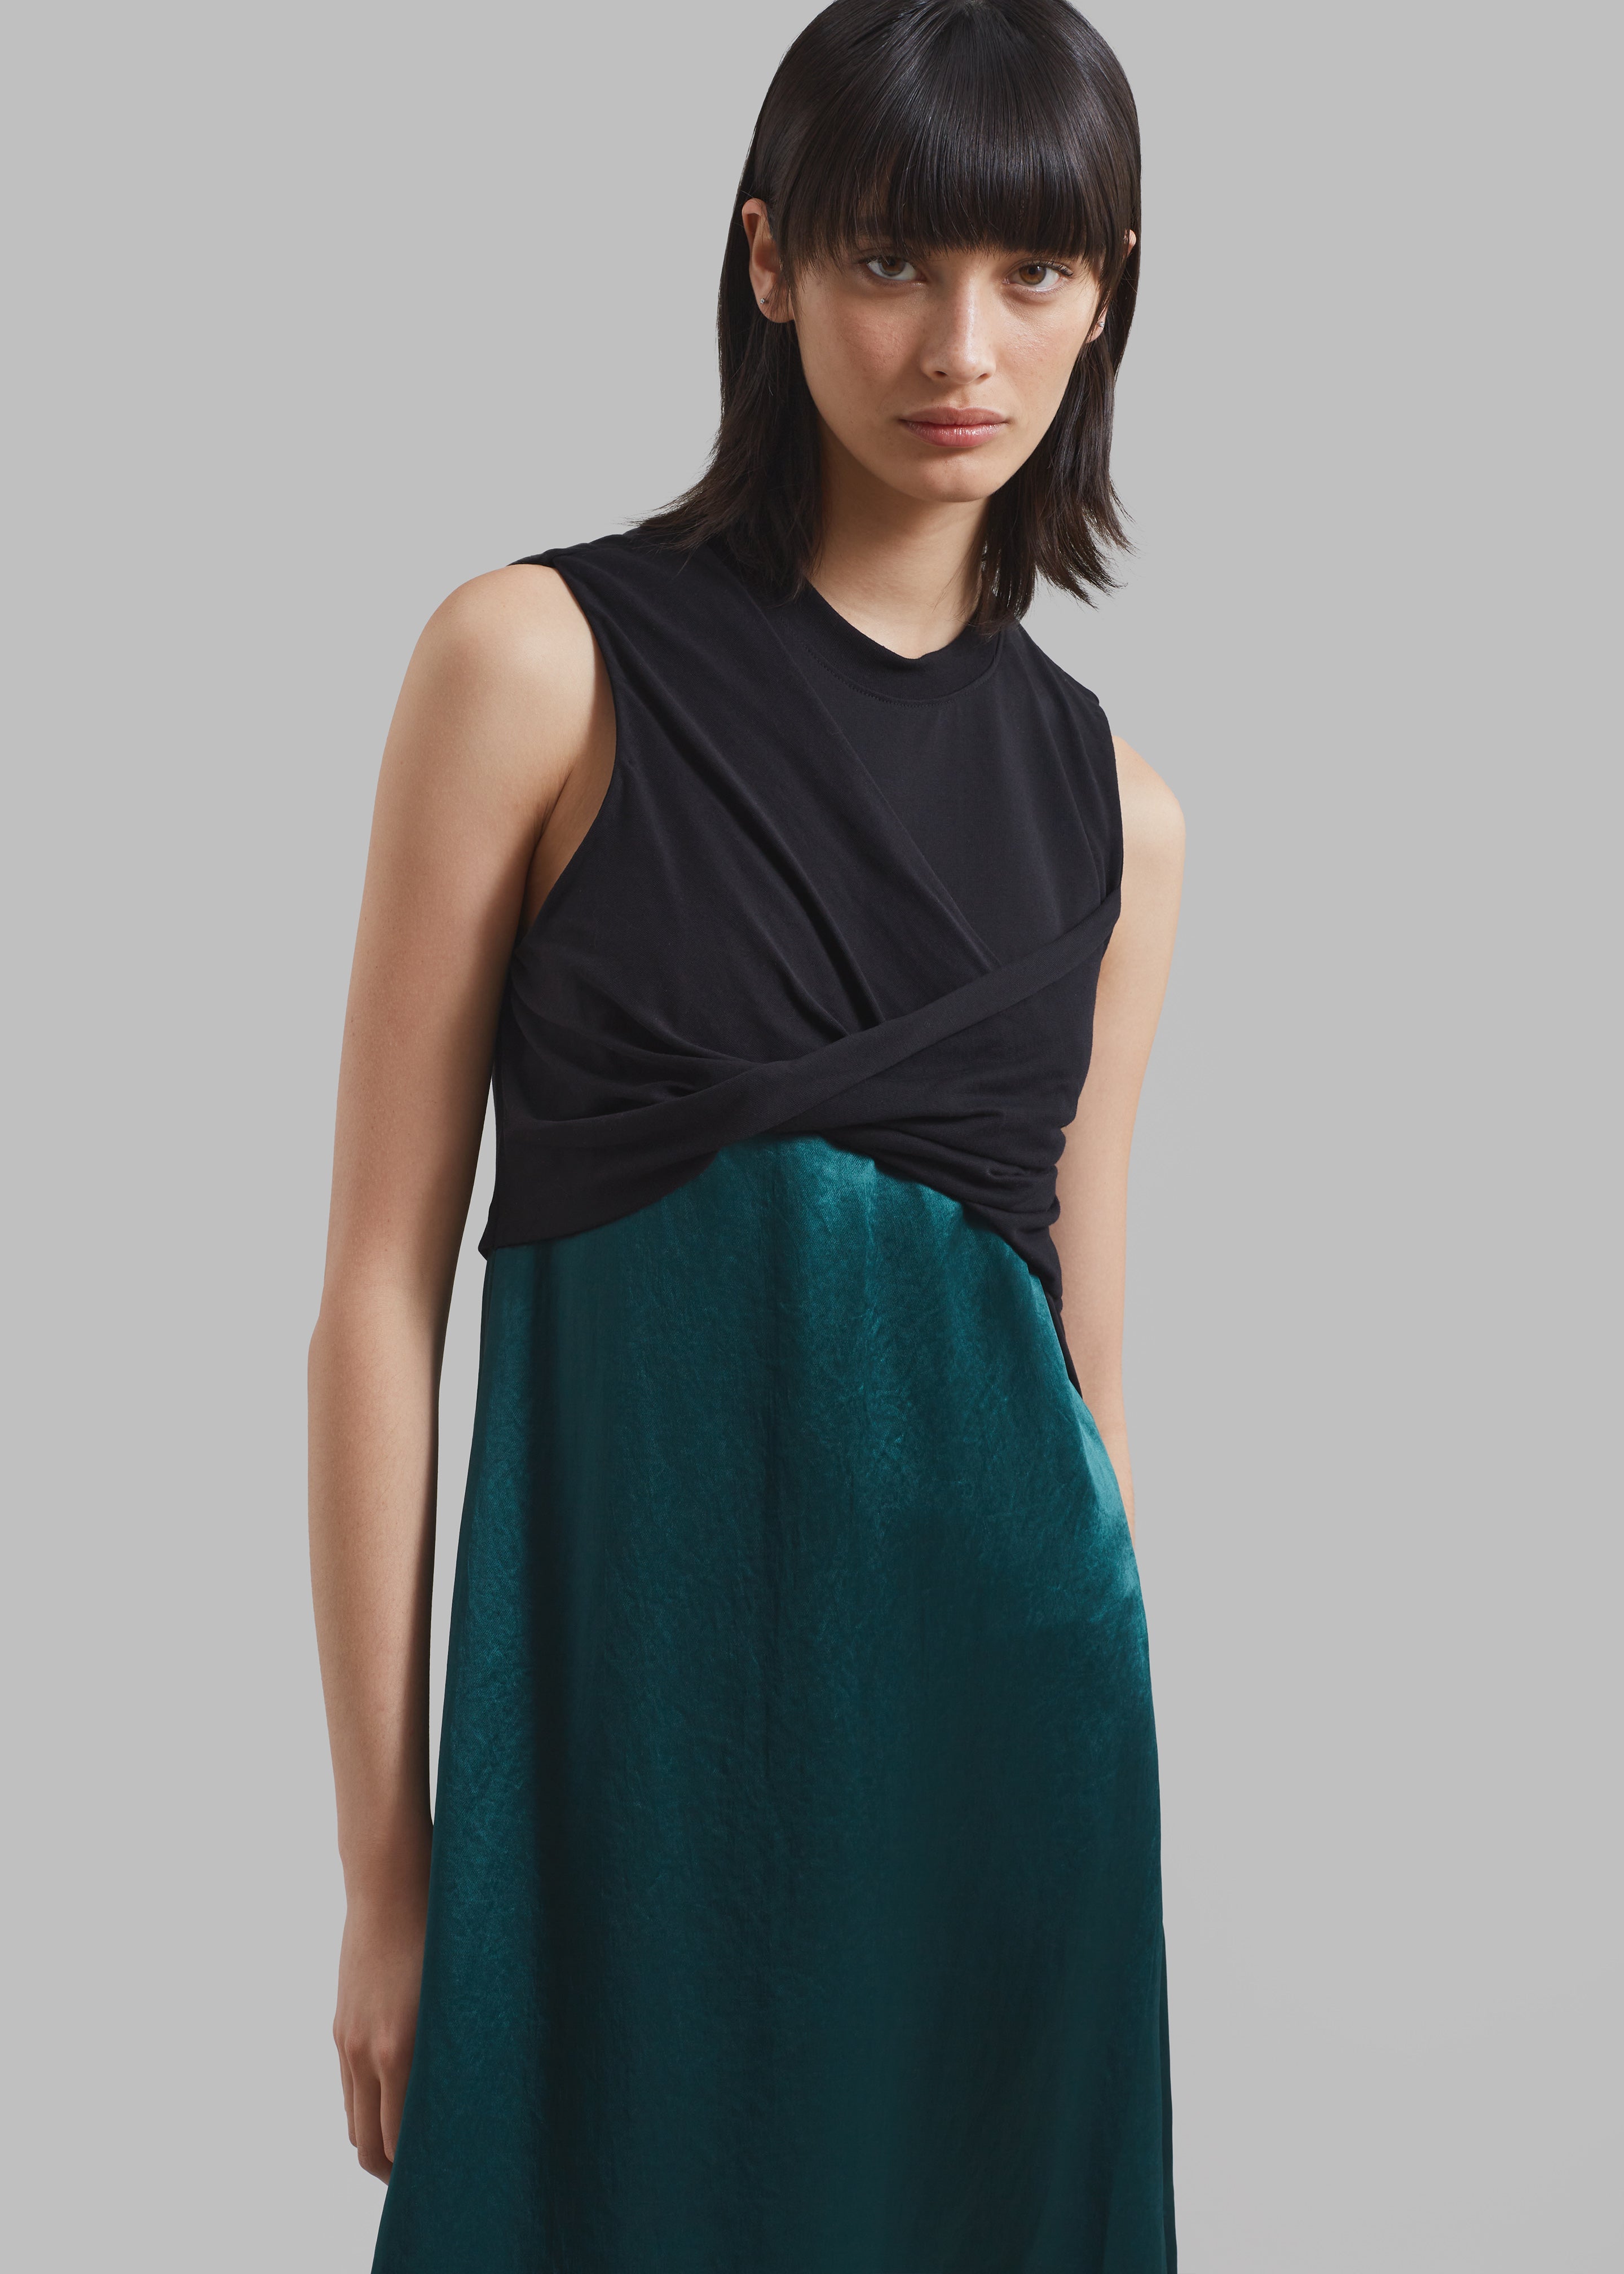 3.1 Phillip Lim Twist Tank Slip Dress - Black/Emerald - 2